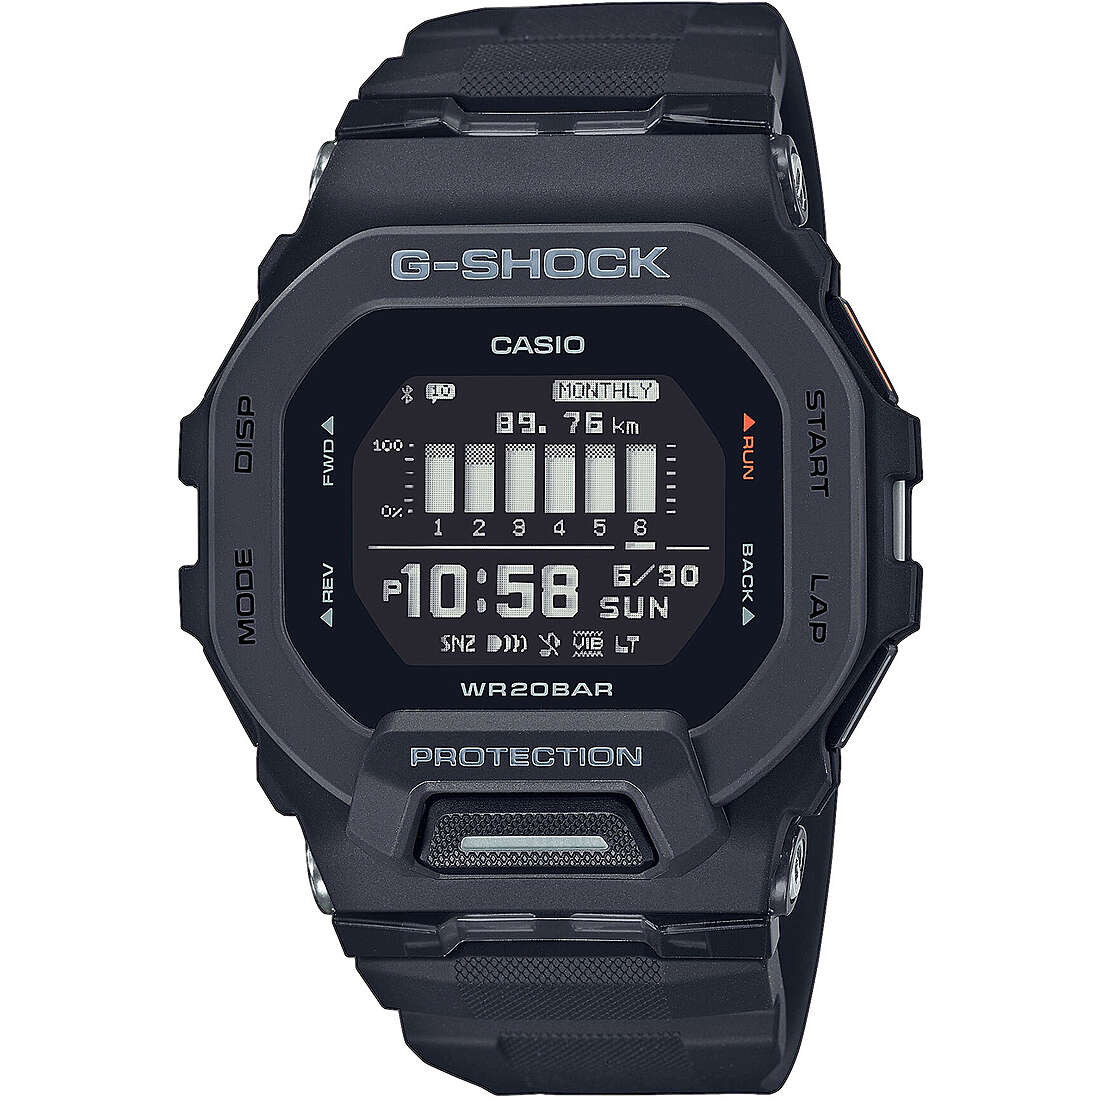 orologio G-Shock G-Squad Nero multifunzione uomo GBD-200-1ER